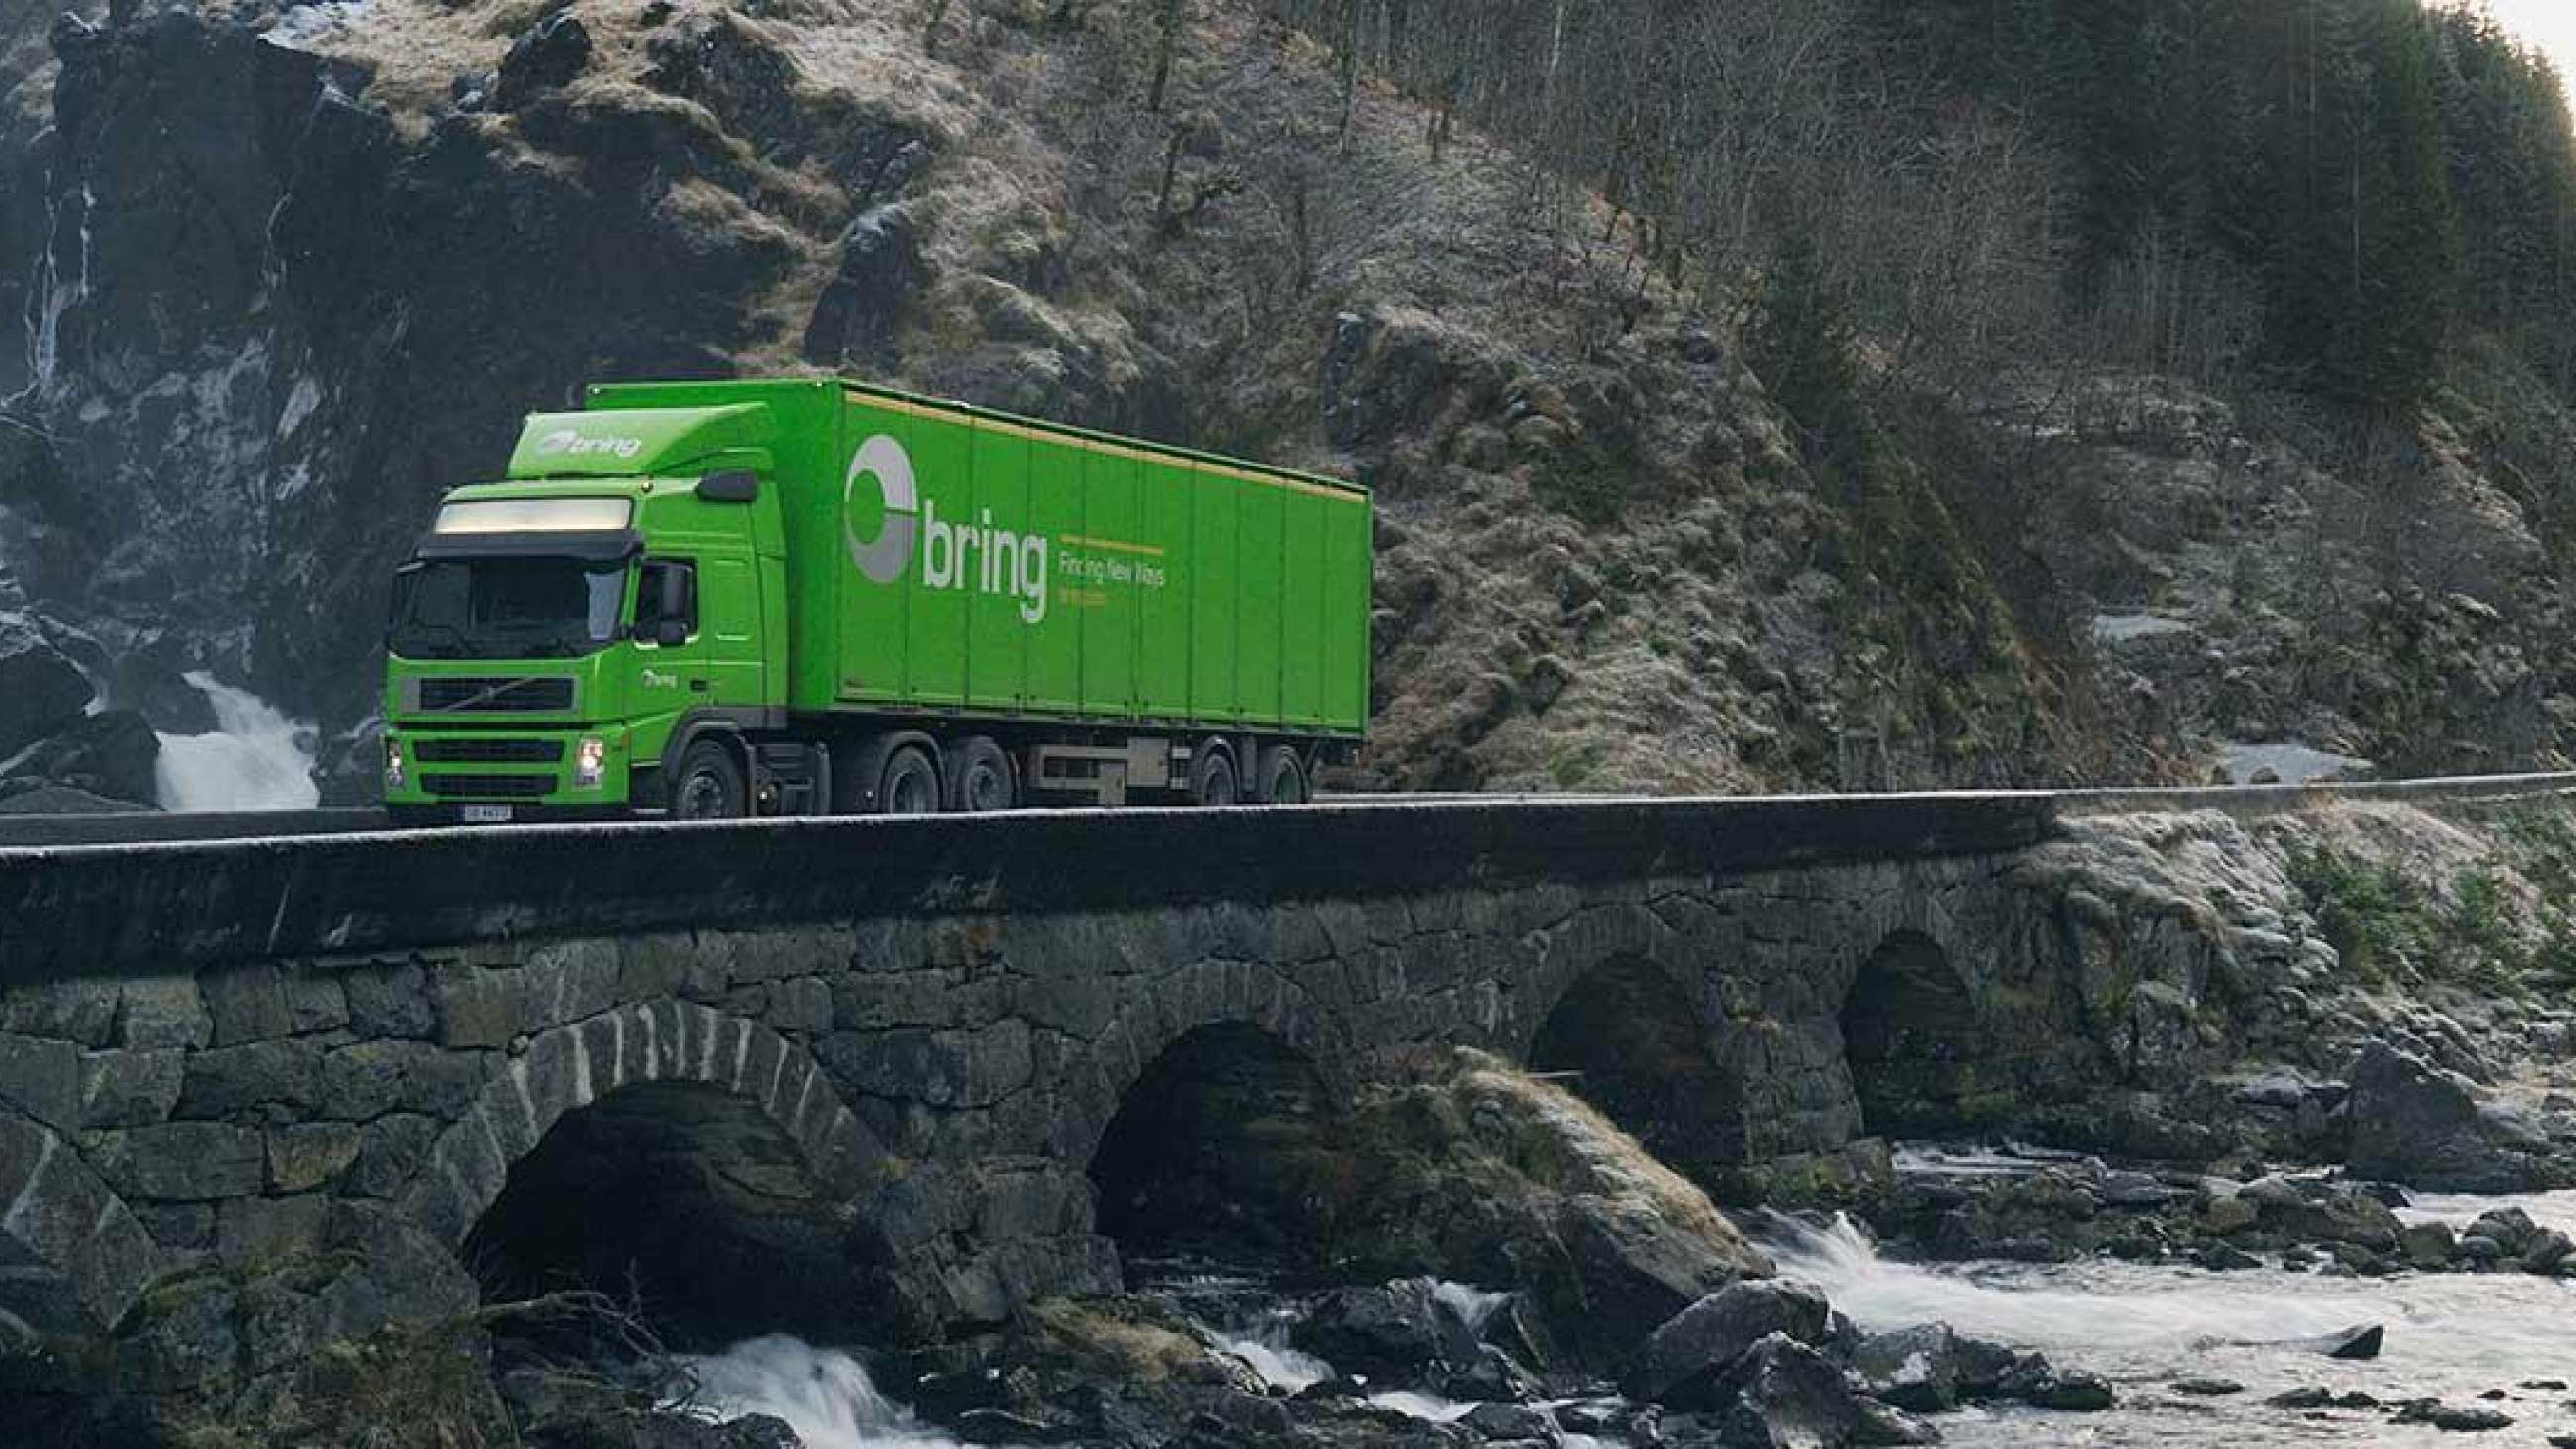 Bring-lastebil kjørende på en steinbru